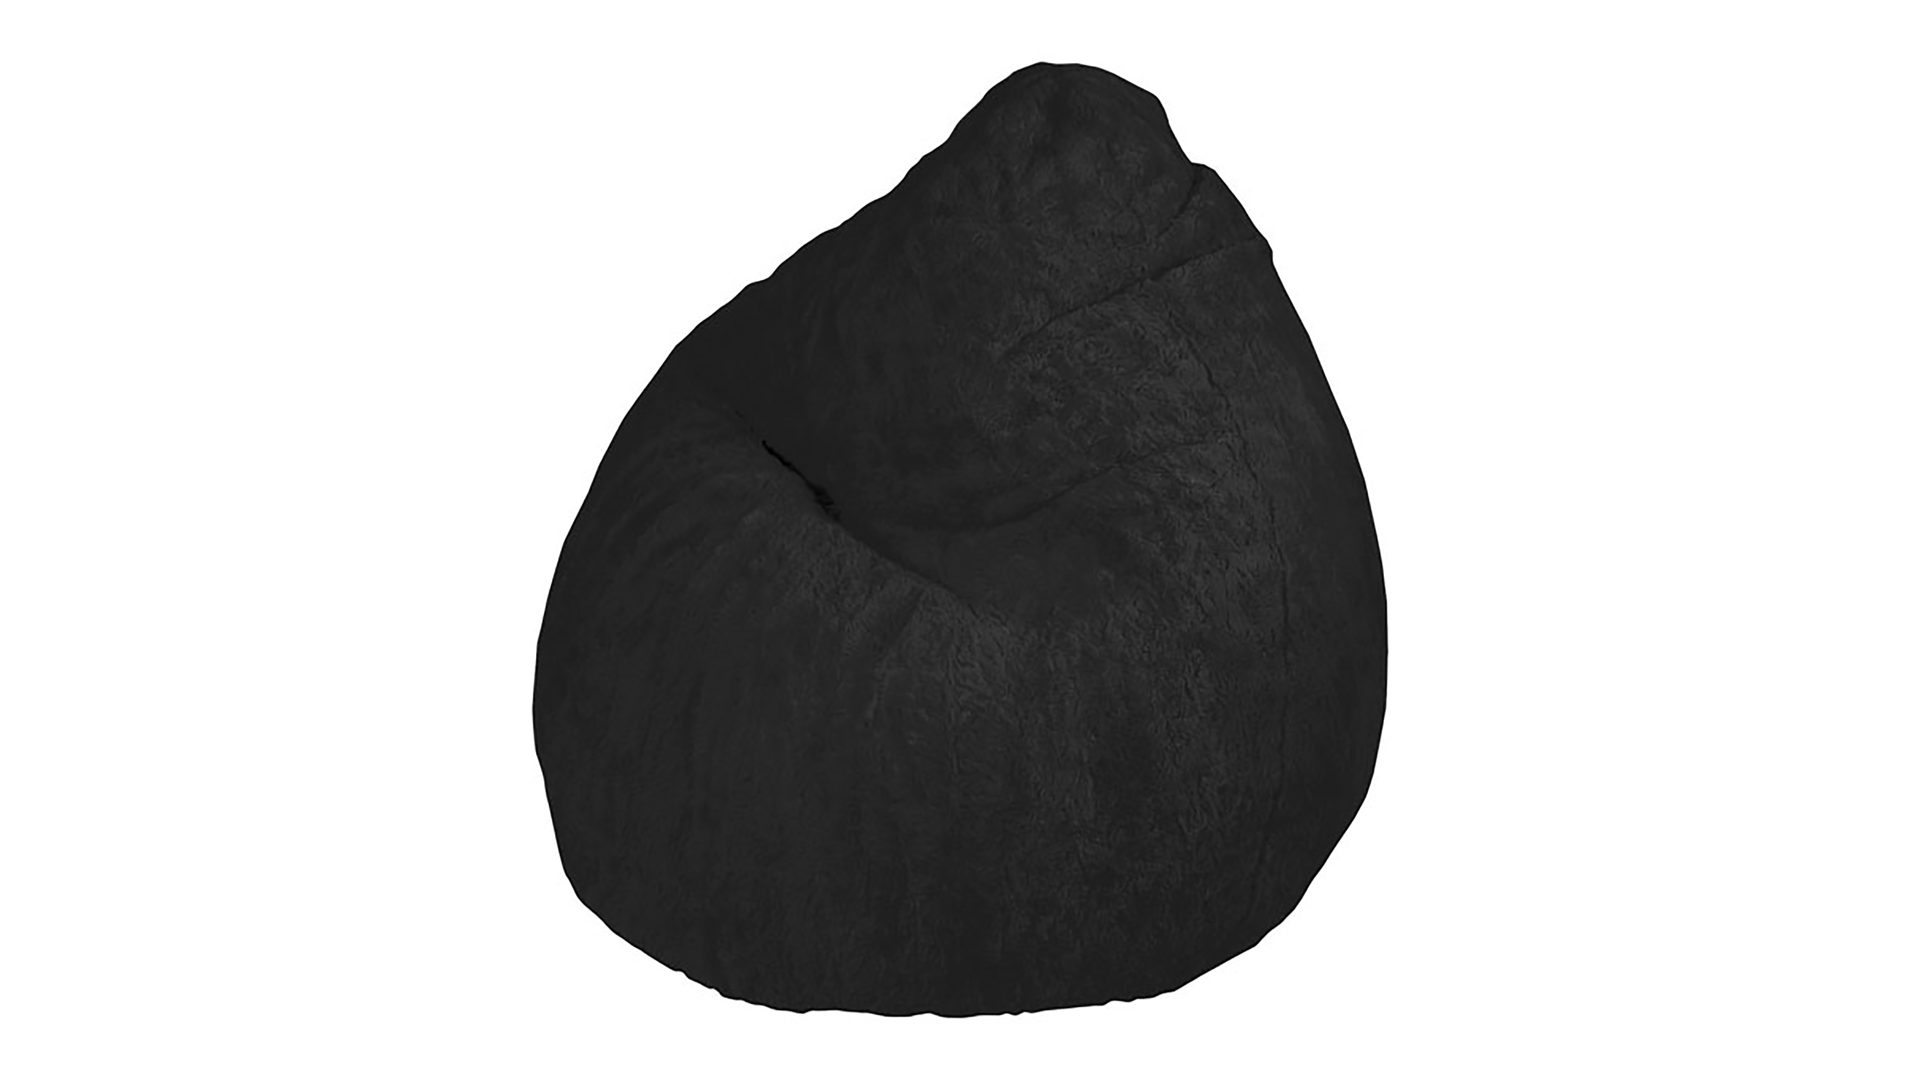 Standard-Sitzsack Magma sitting point aus Stoff in Schwarz SITTING POINT Plüsch-Sitzsack Fluffy XL - Sitzmöbel schwarzer Plüschbezug - ca. 220 Liter